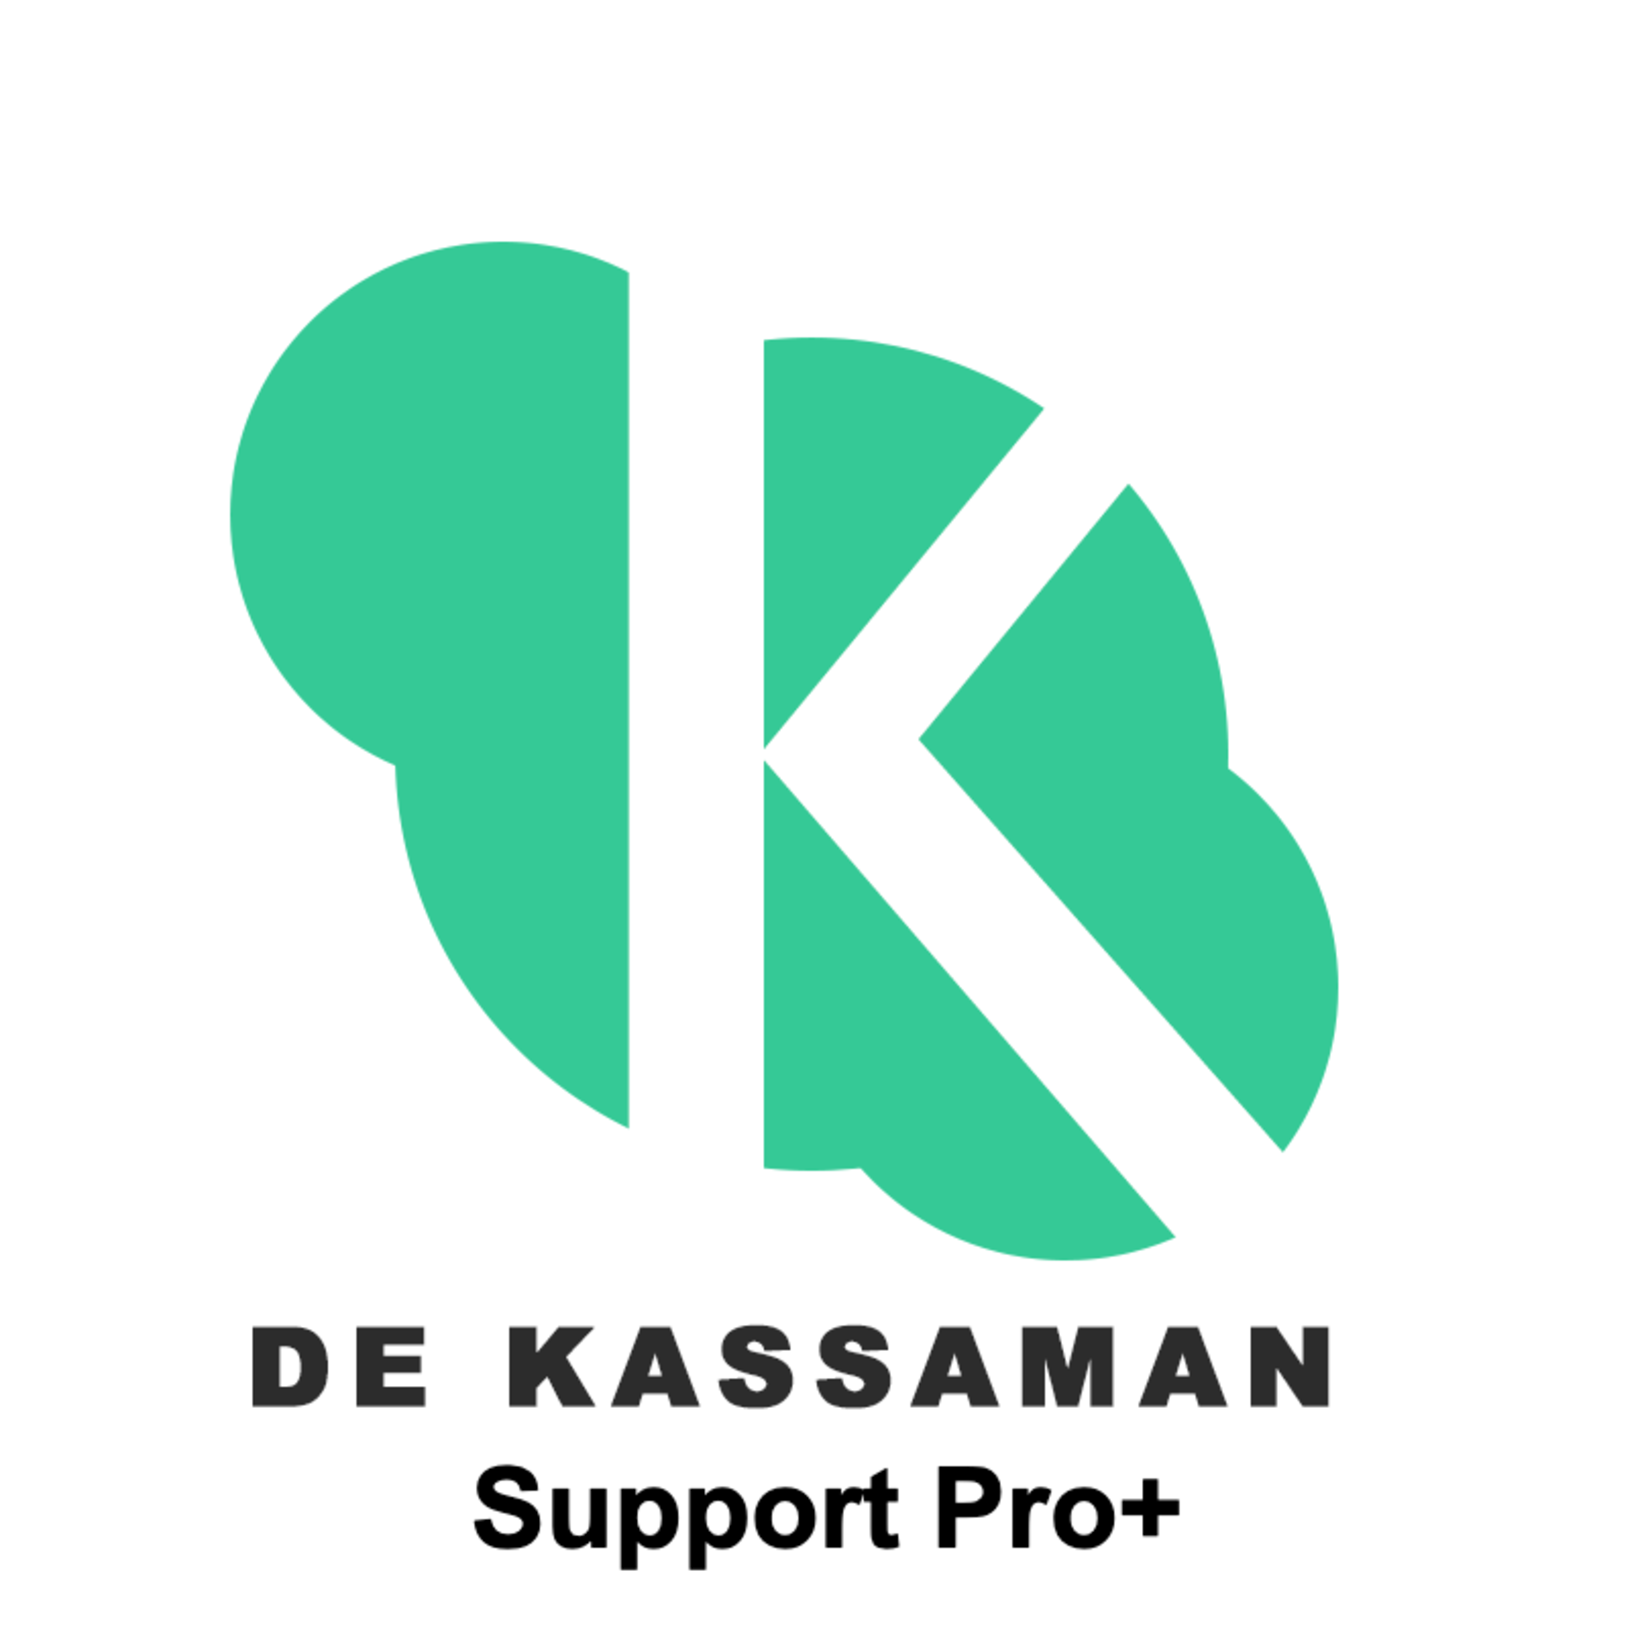 Premium support Pro+